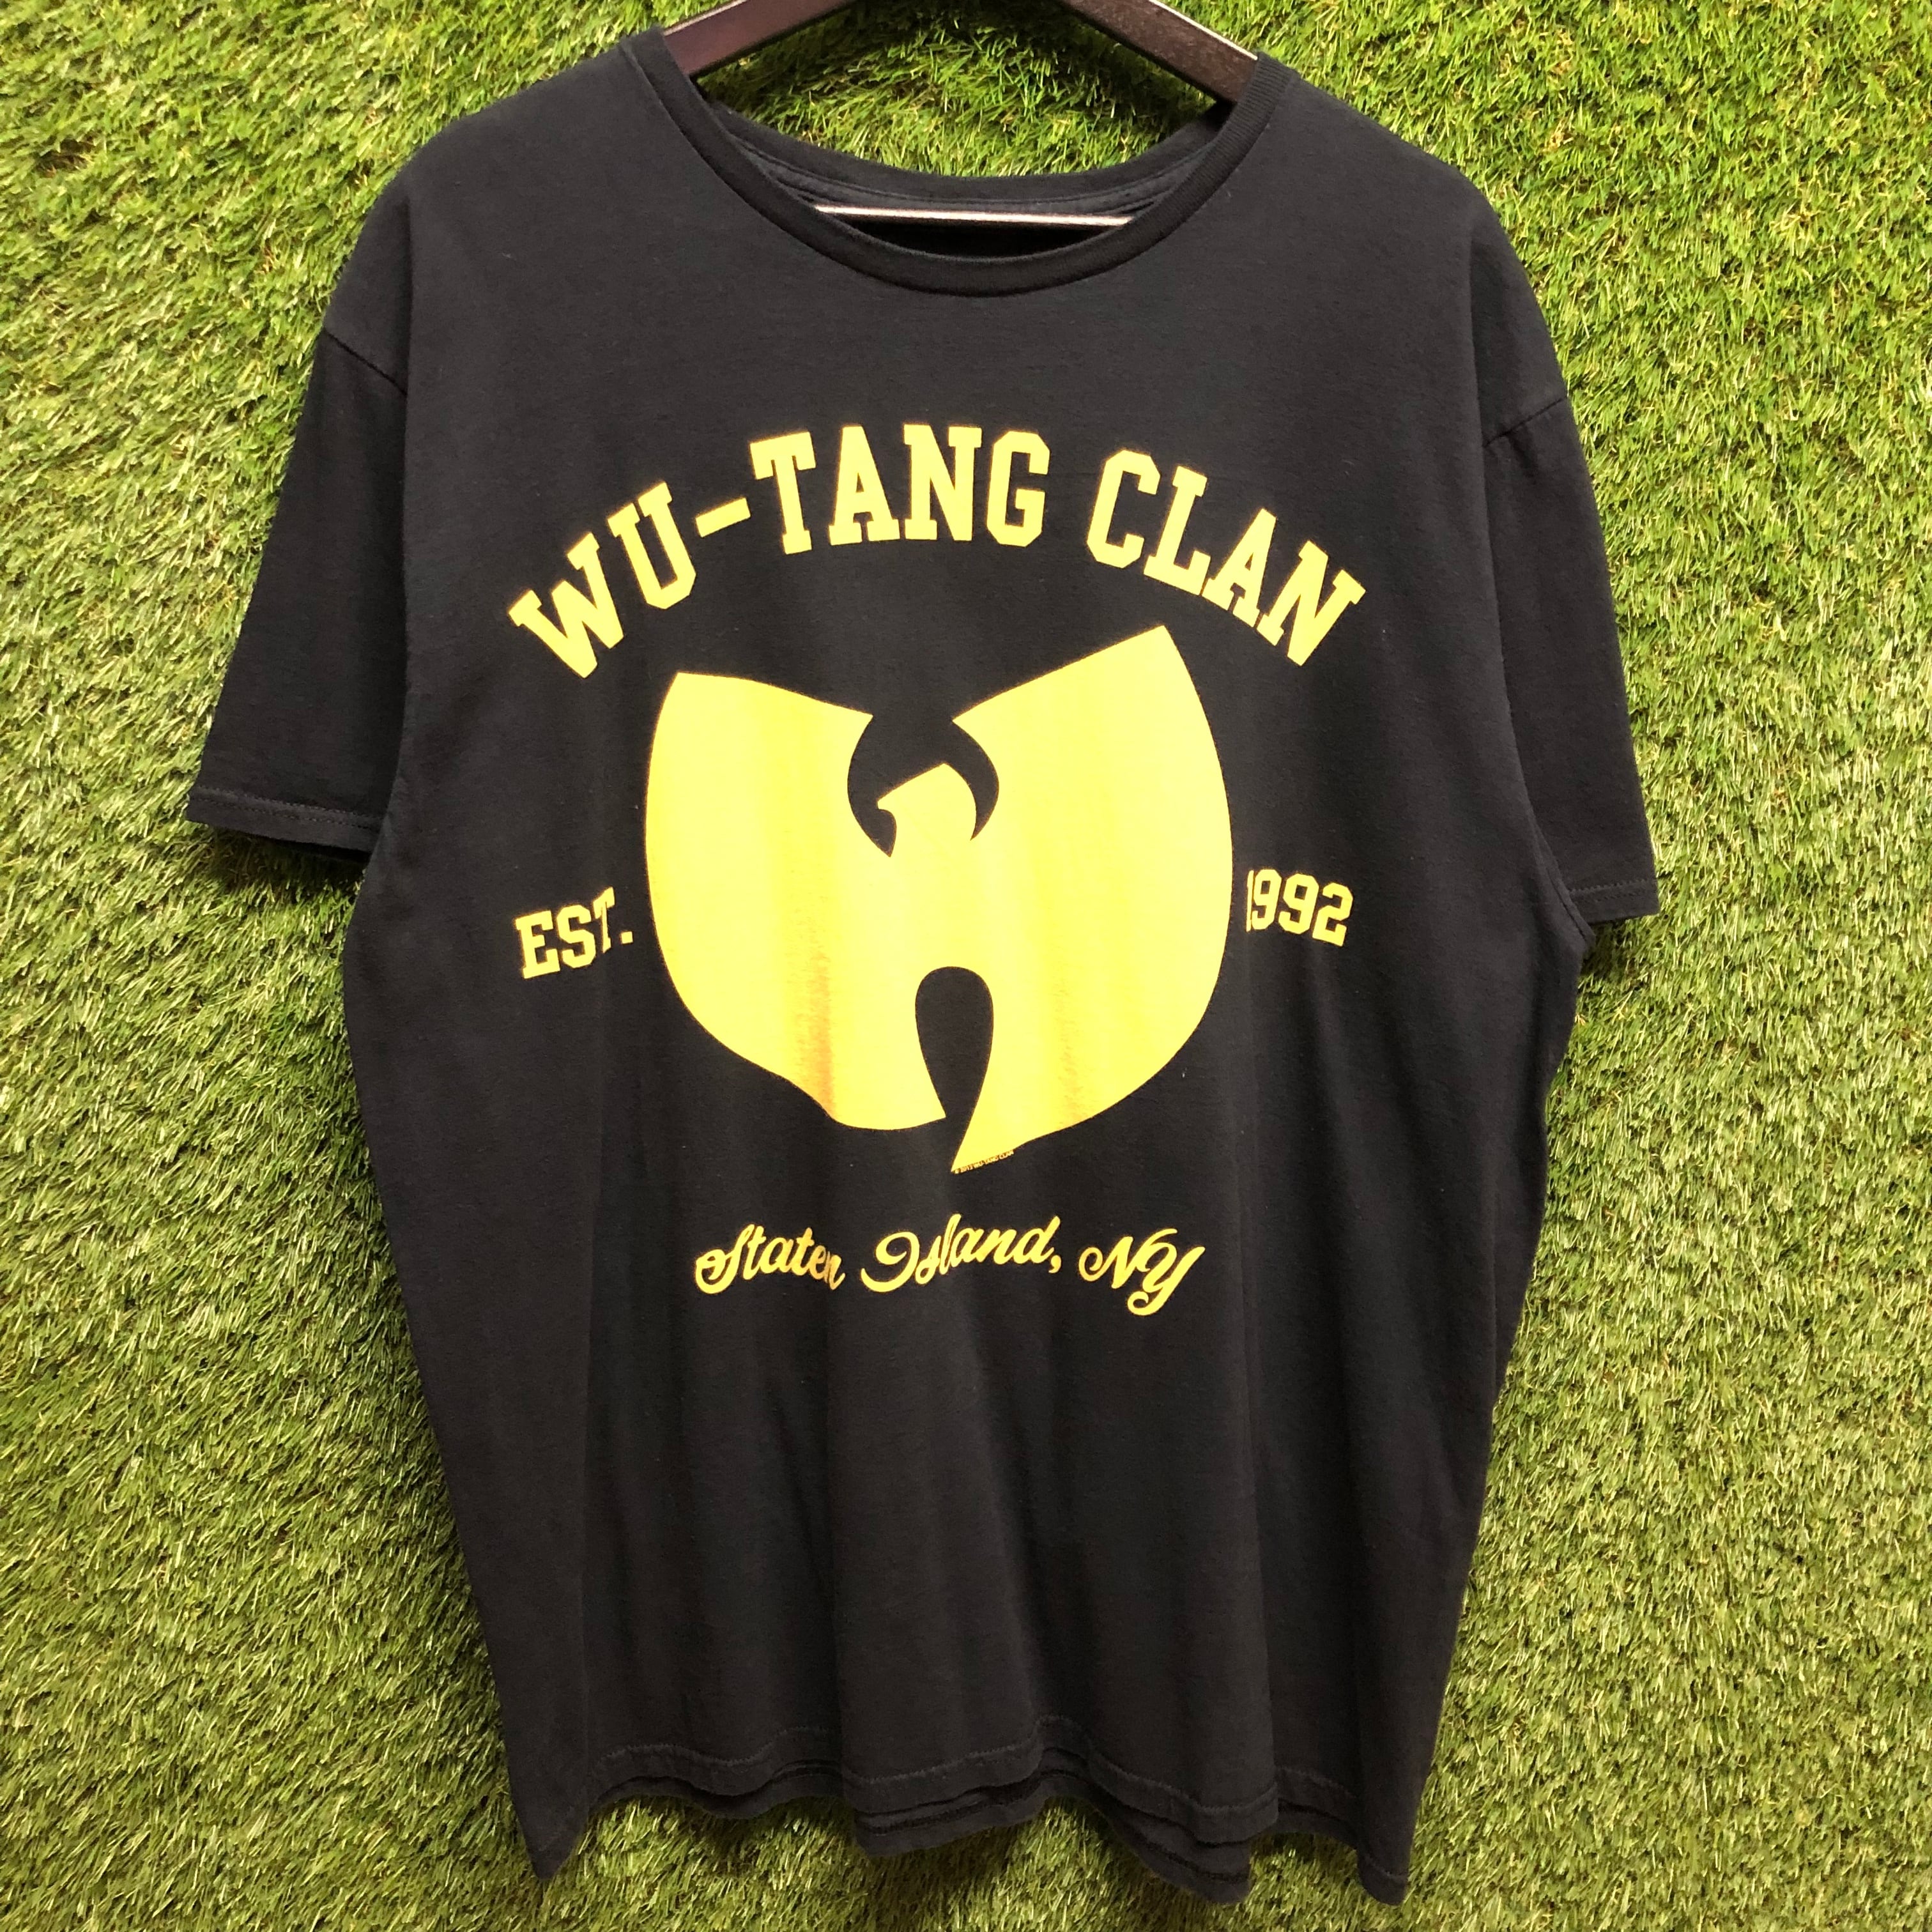 激レア 97年製 ウータンクラン(Wu-Tang Clan) 佐野玲於 着用 - Tシャツ